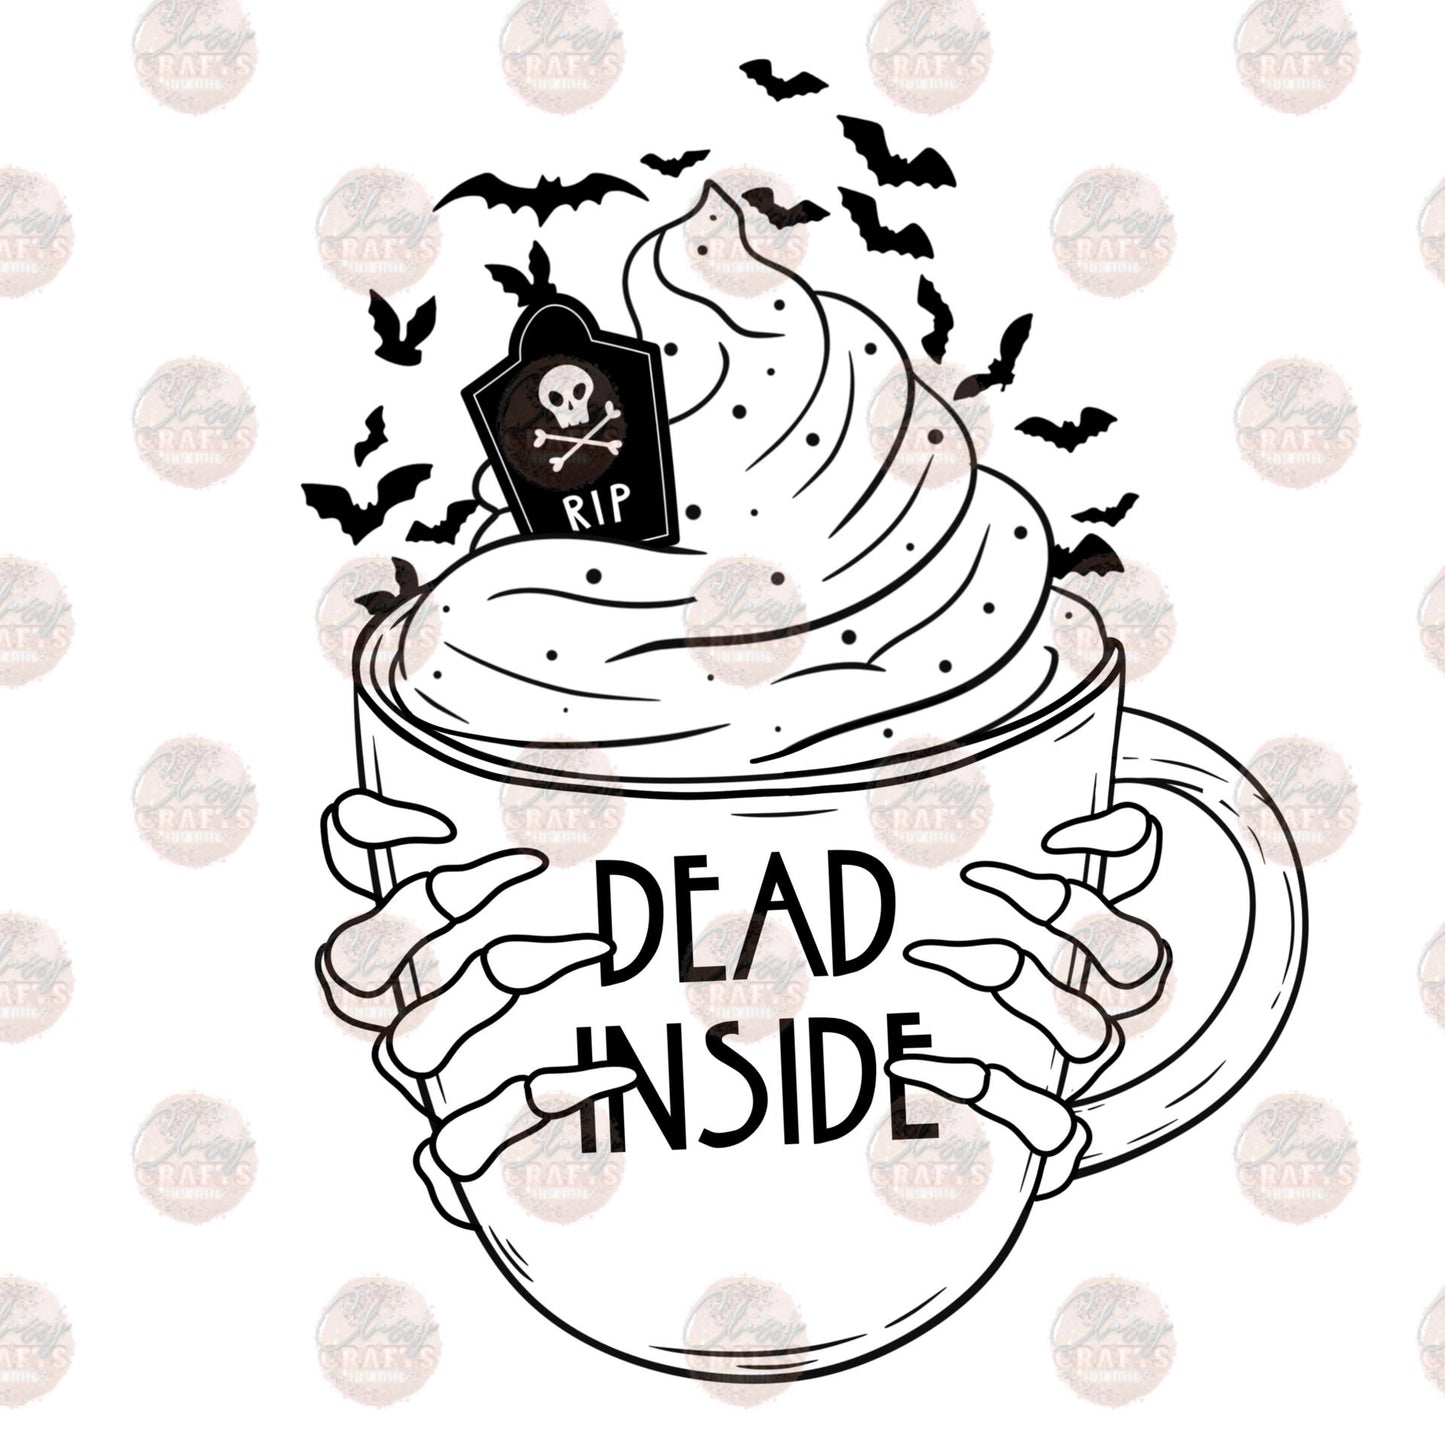 Dead Inside Mug - Sublimation Transfer